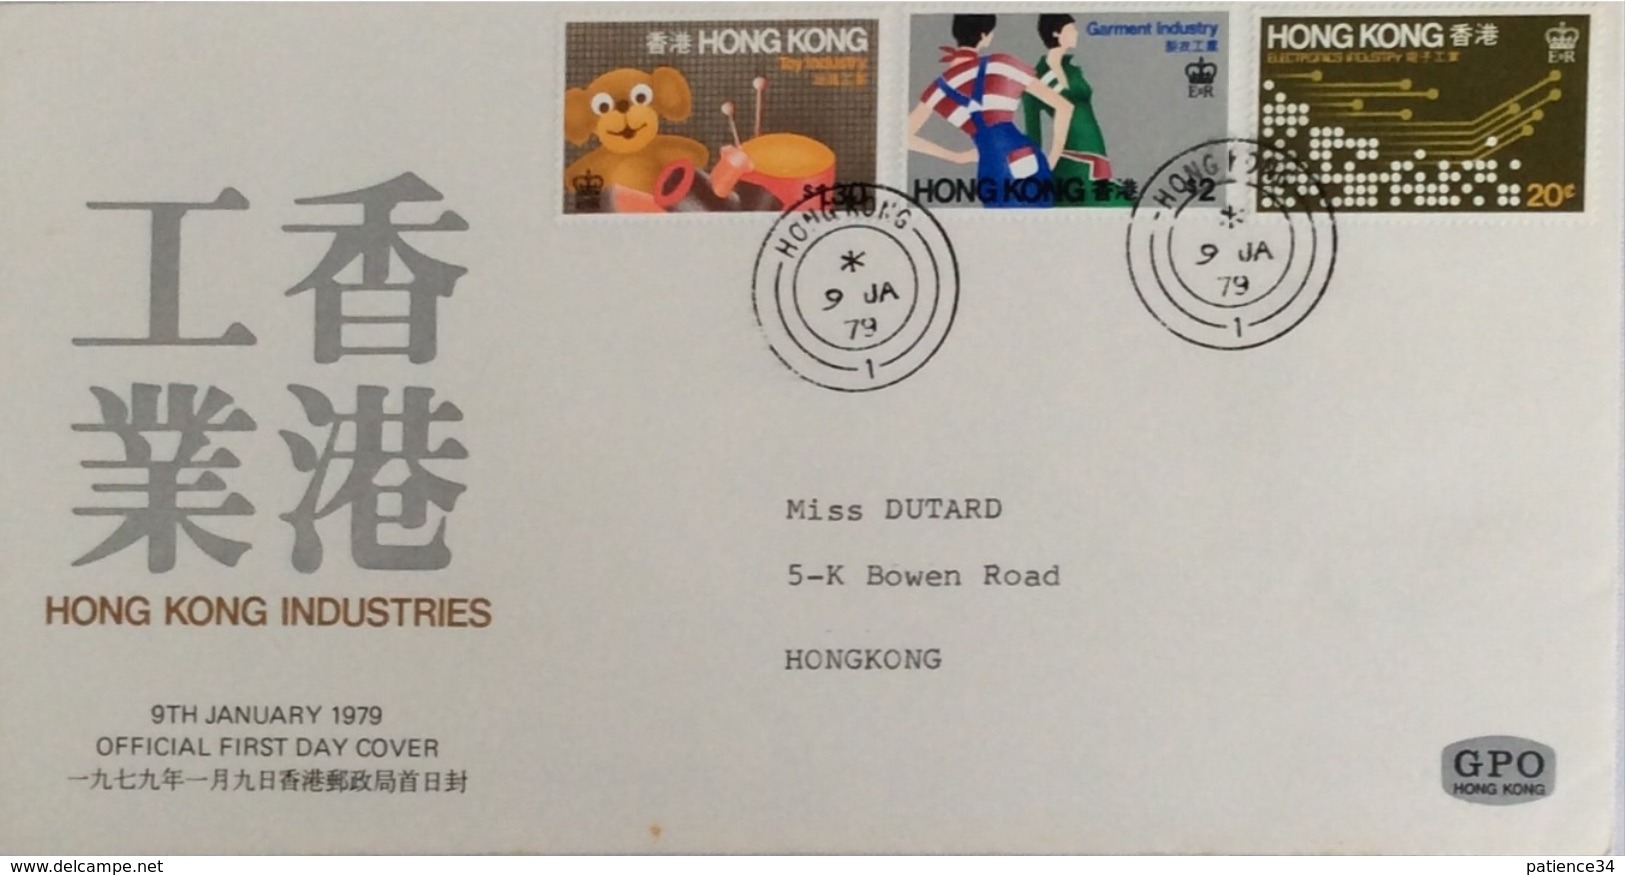 HONG KONG: Petit lot d' enveloppes premier jour